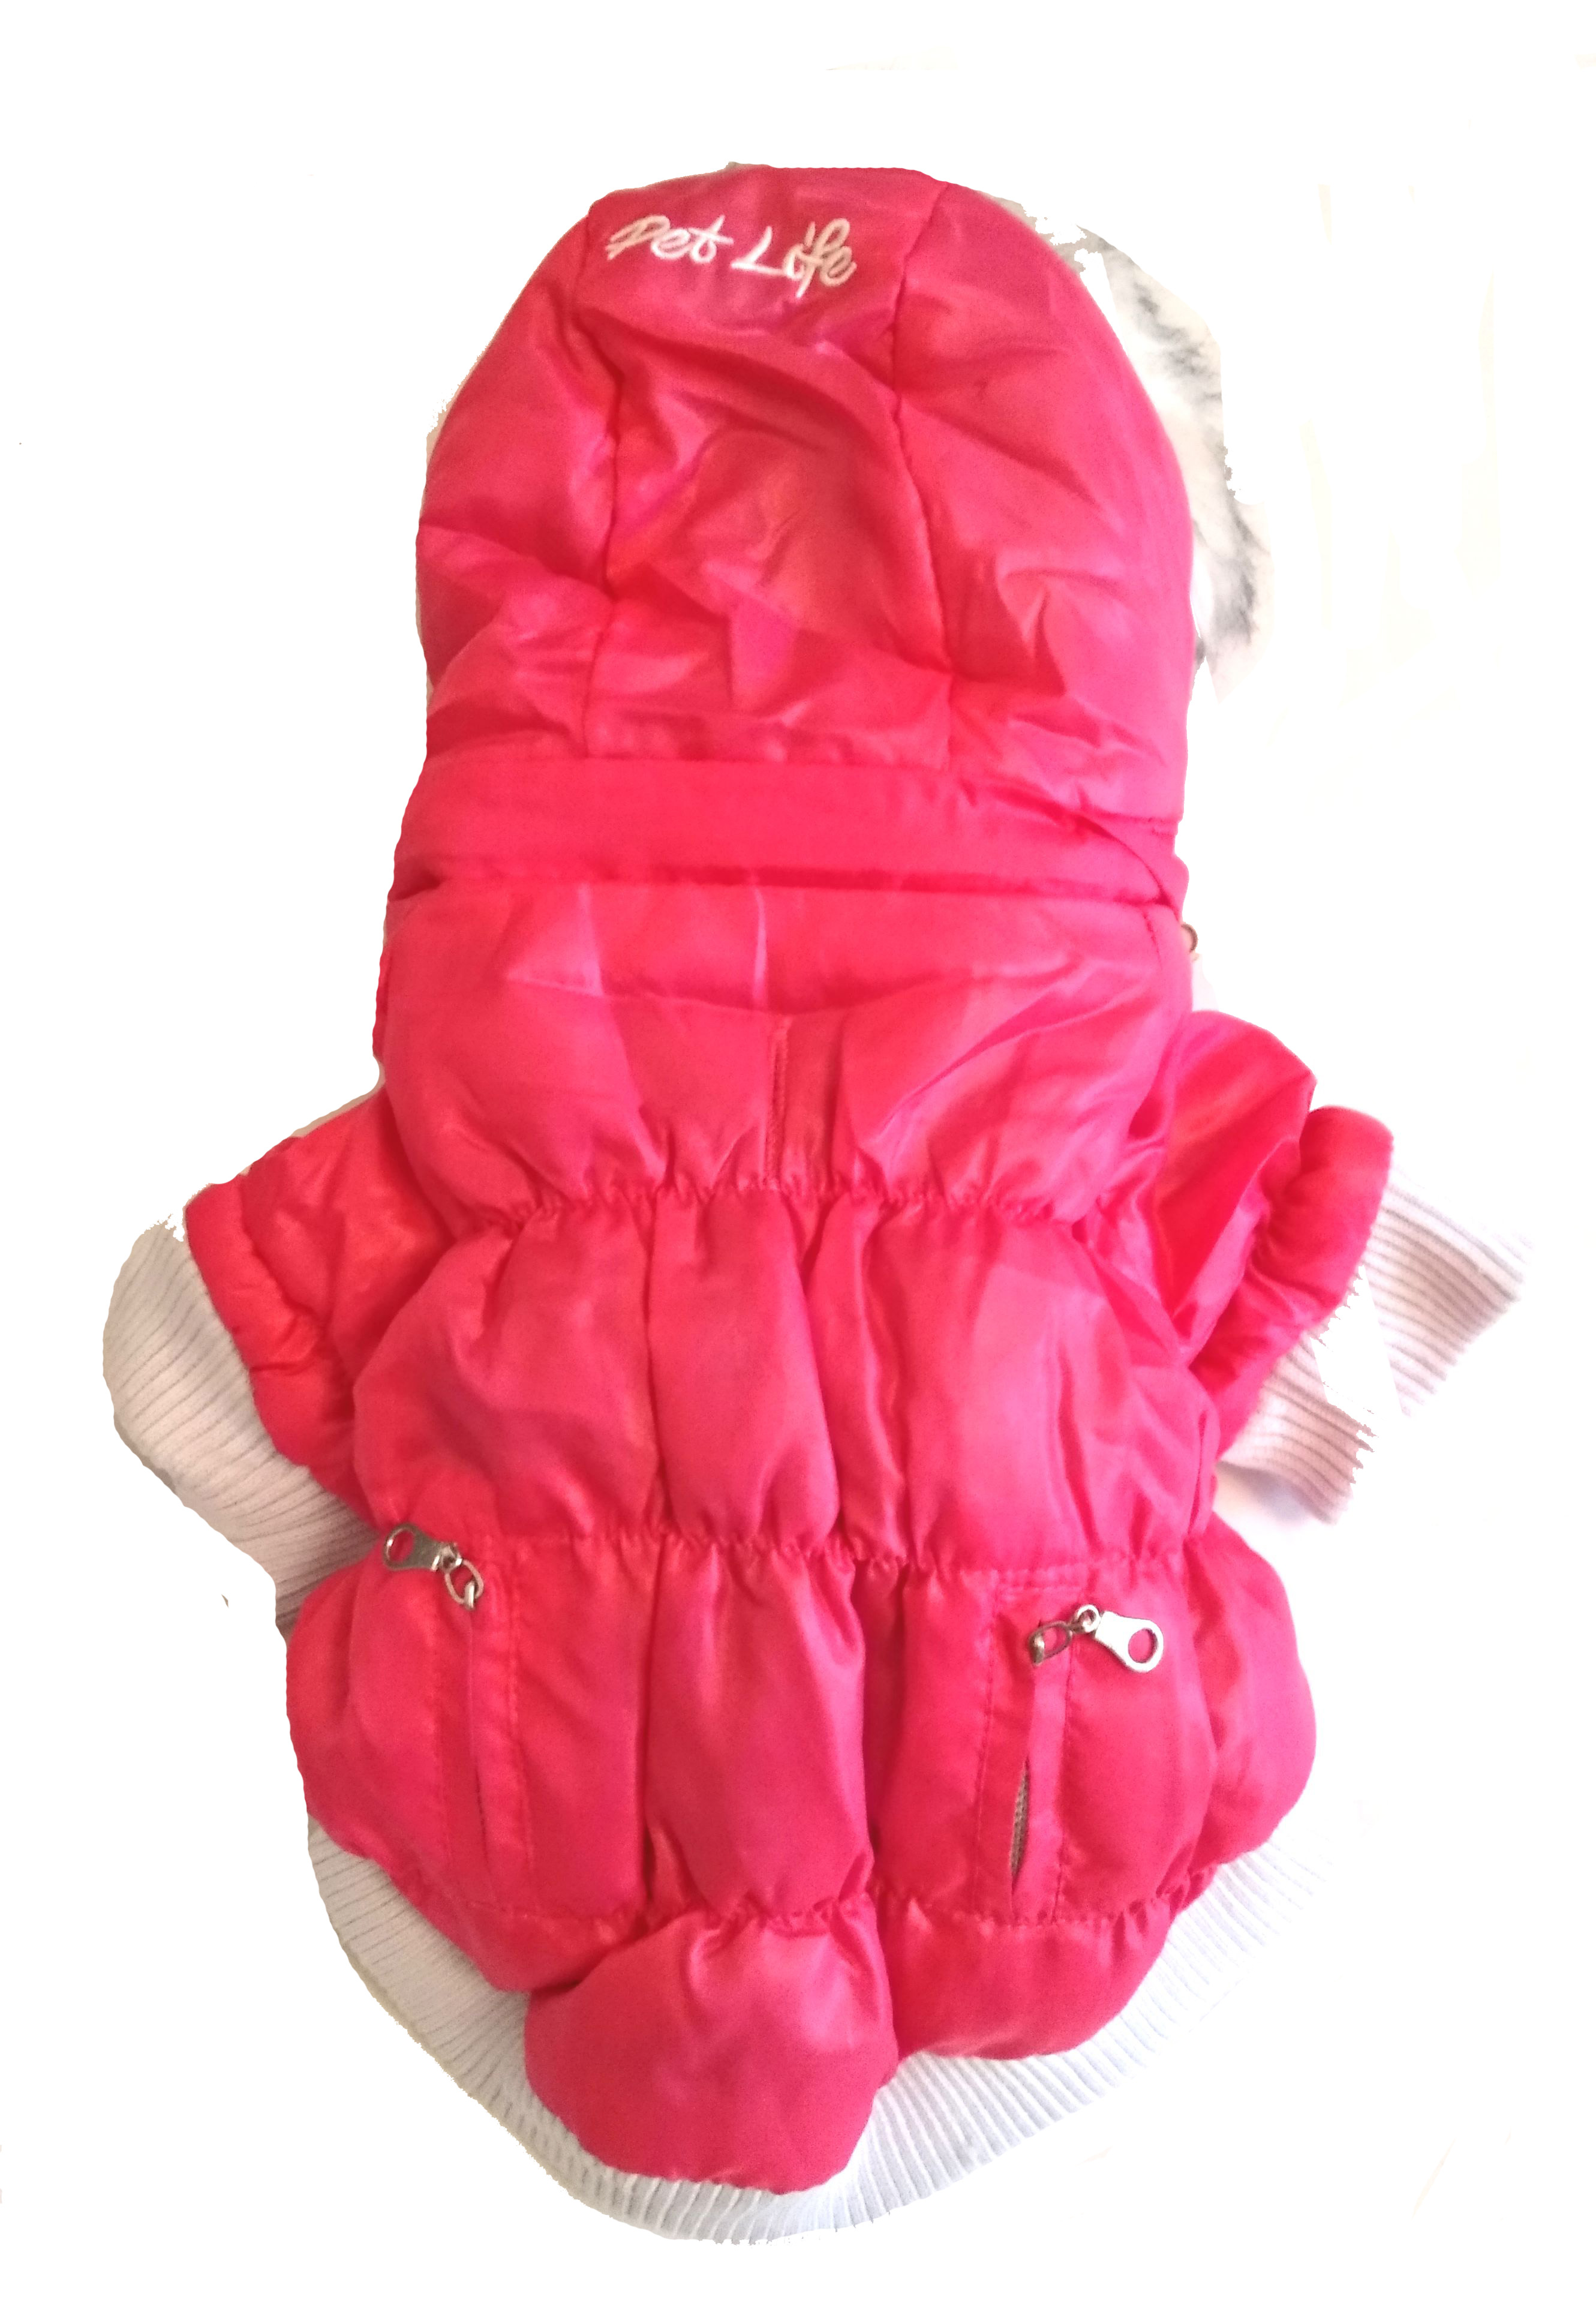 PETLIFE rózsaszín kutyaruha, kabát. Háthossz 25 cm. 